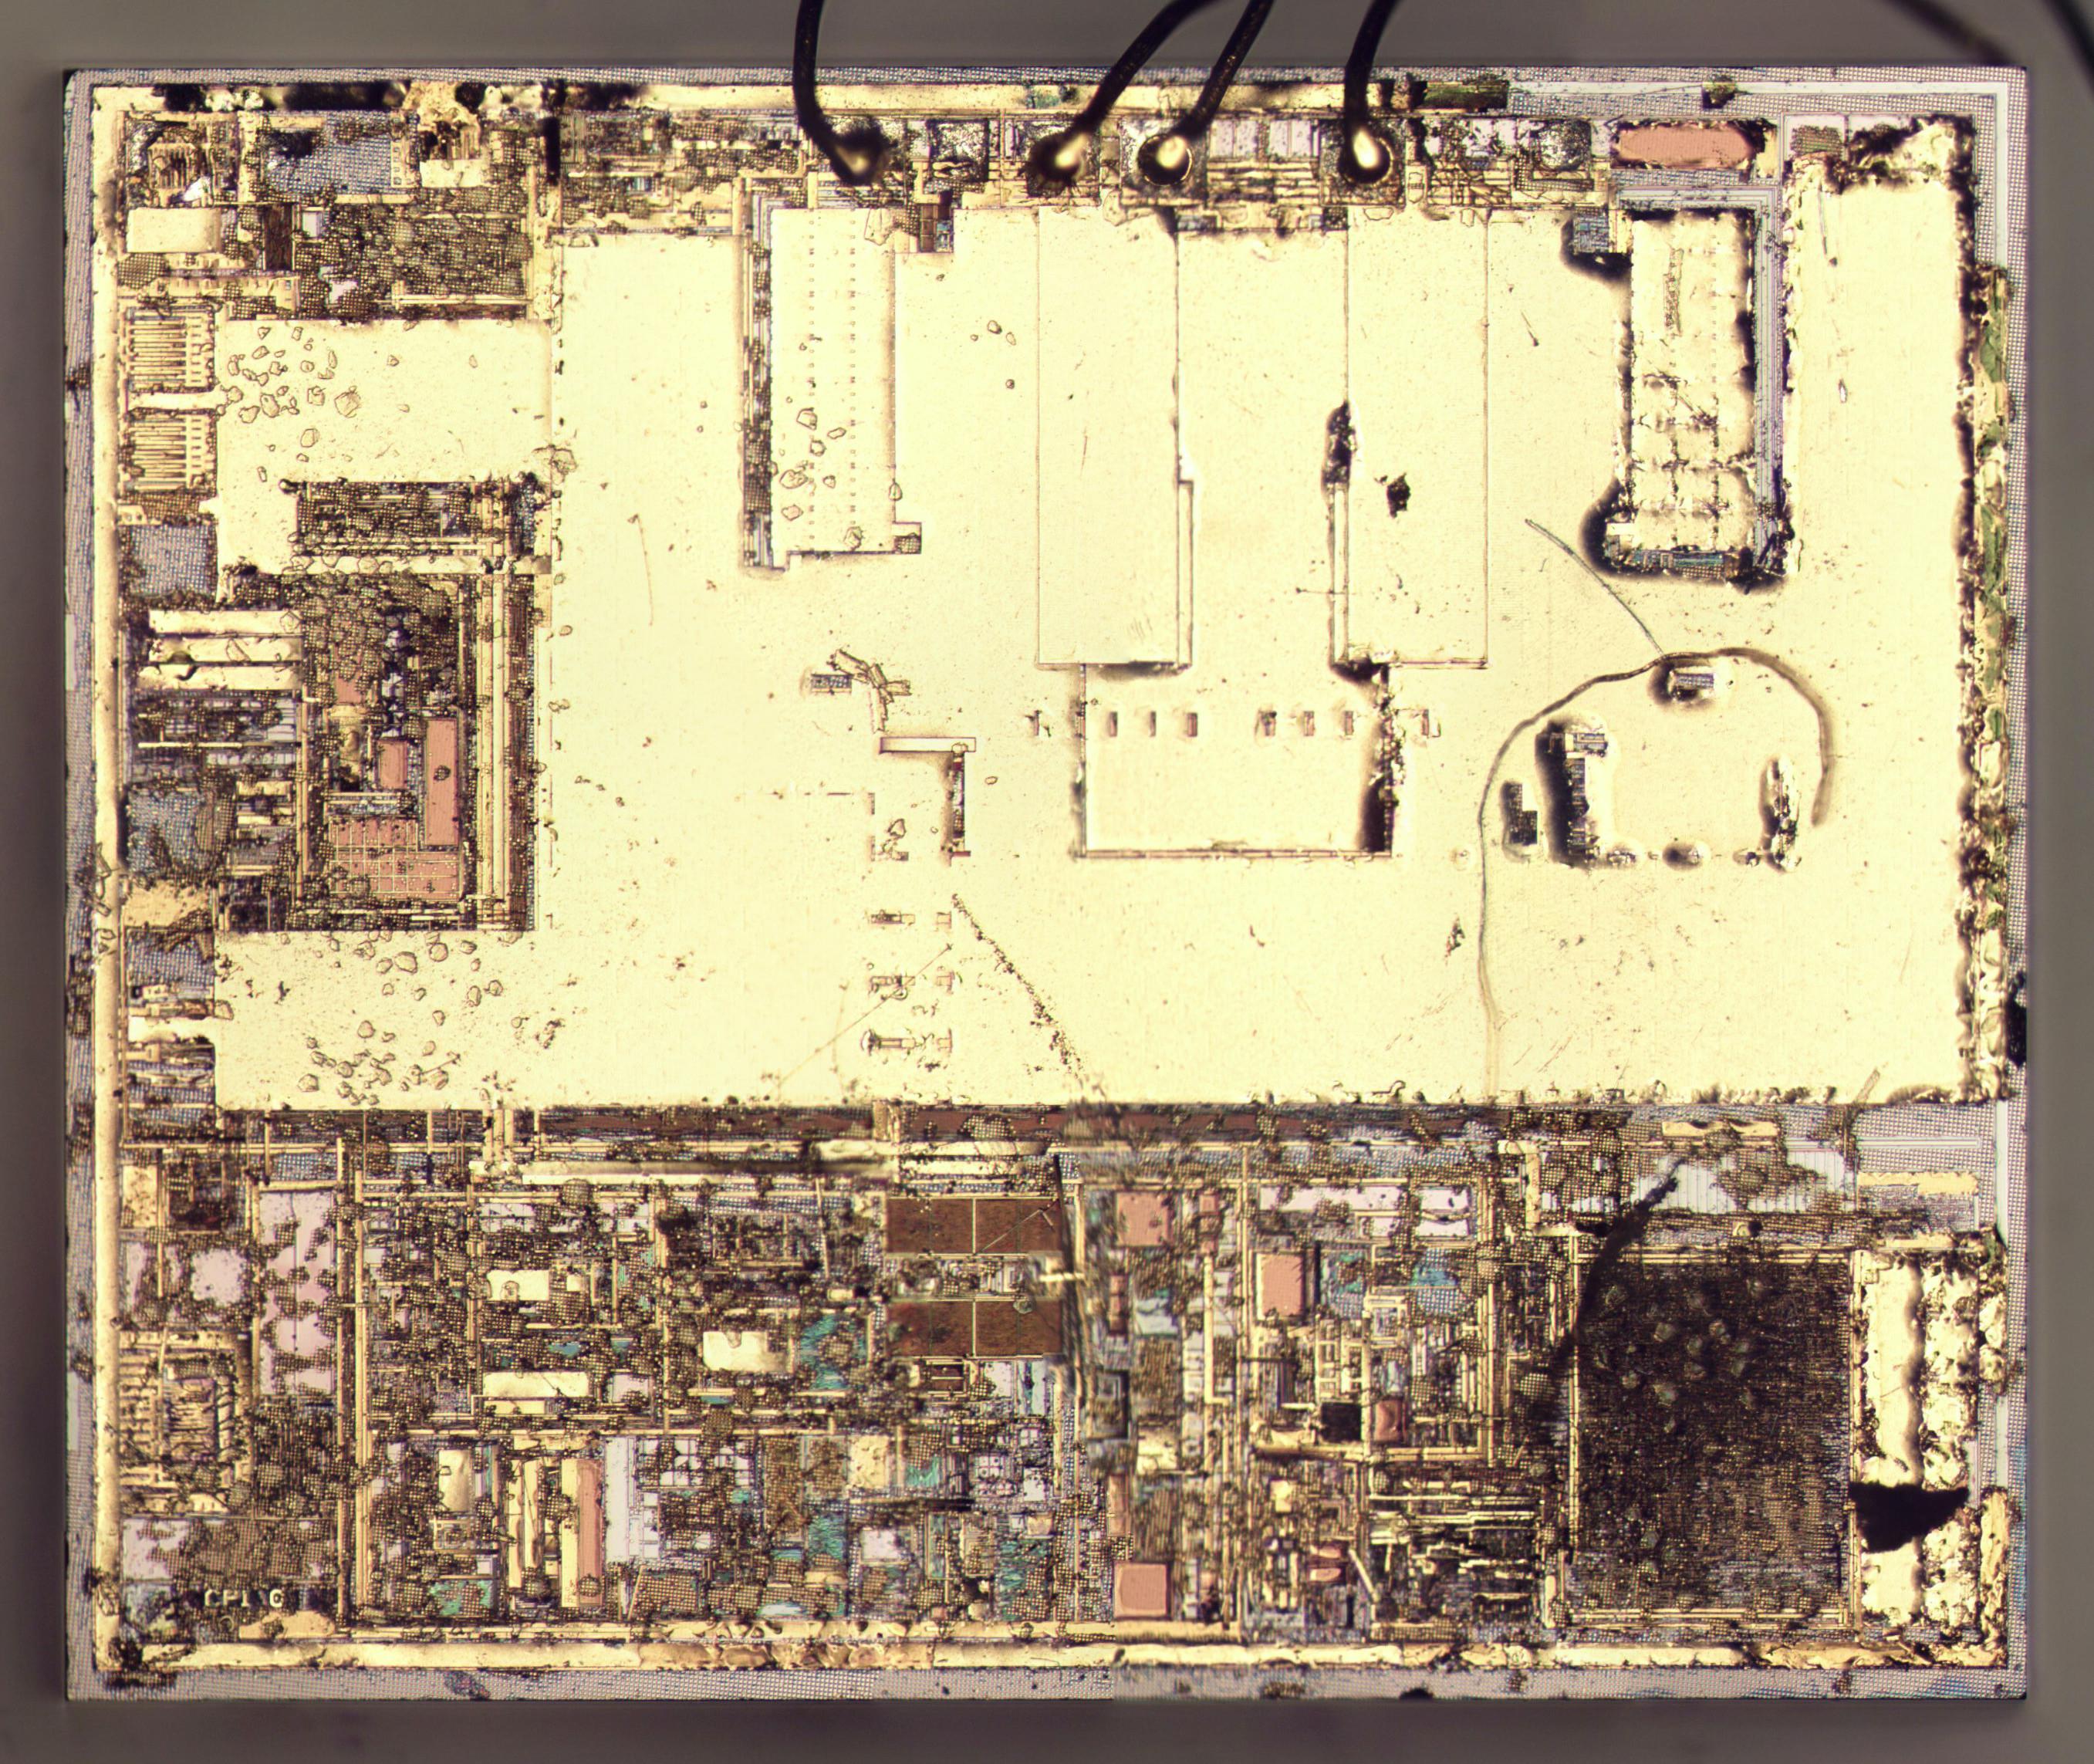 Вскрываем чип гальванической развязки с крохотным трансформатором внутри - 16